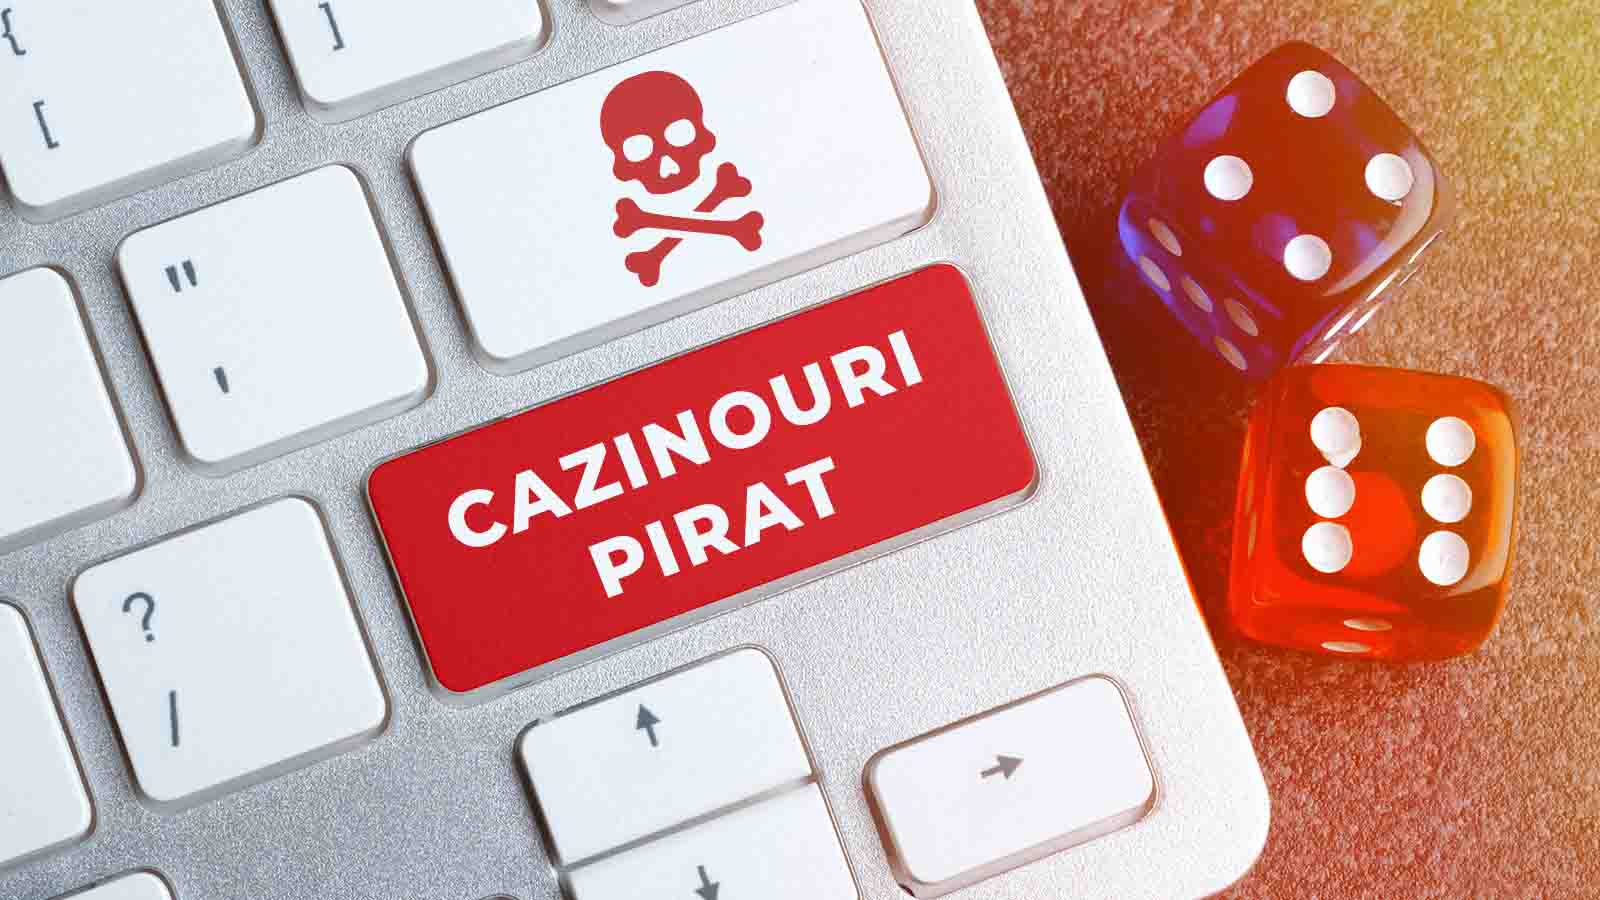 Există cazinouri pirat în România? Află cum să te ferești de acești operatori!  